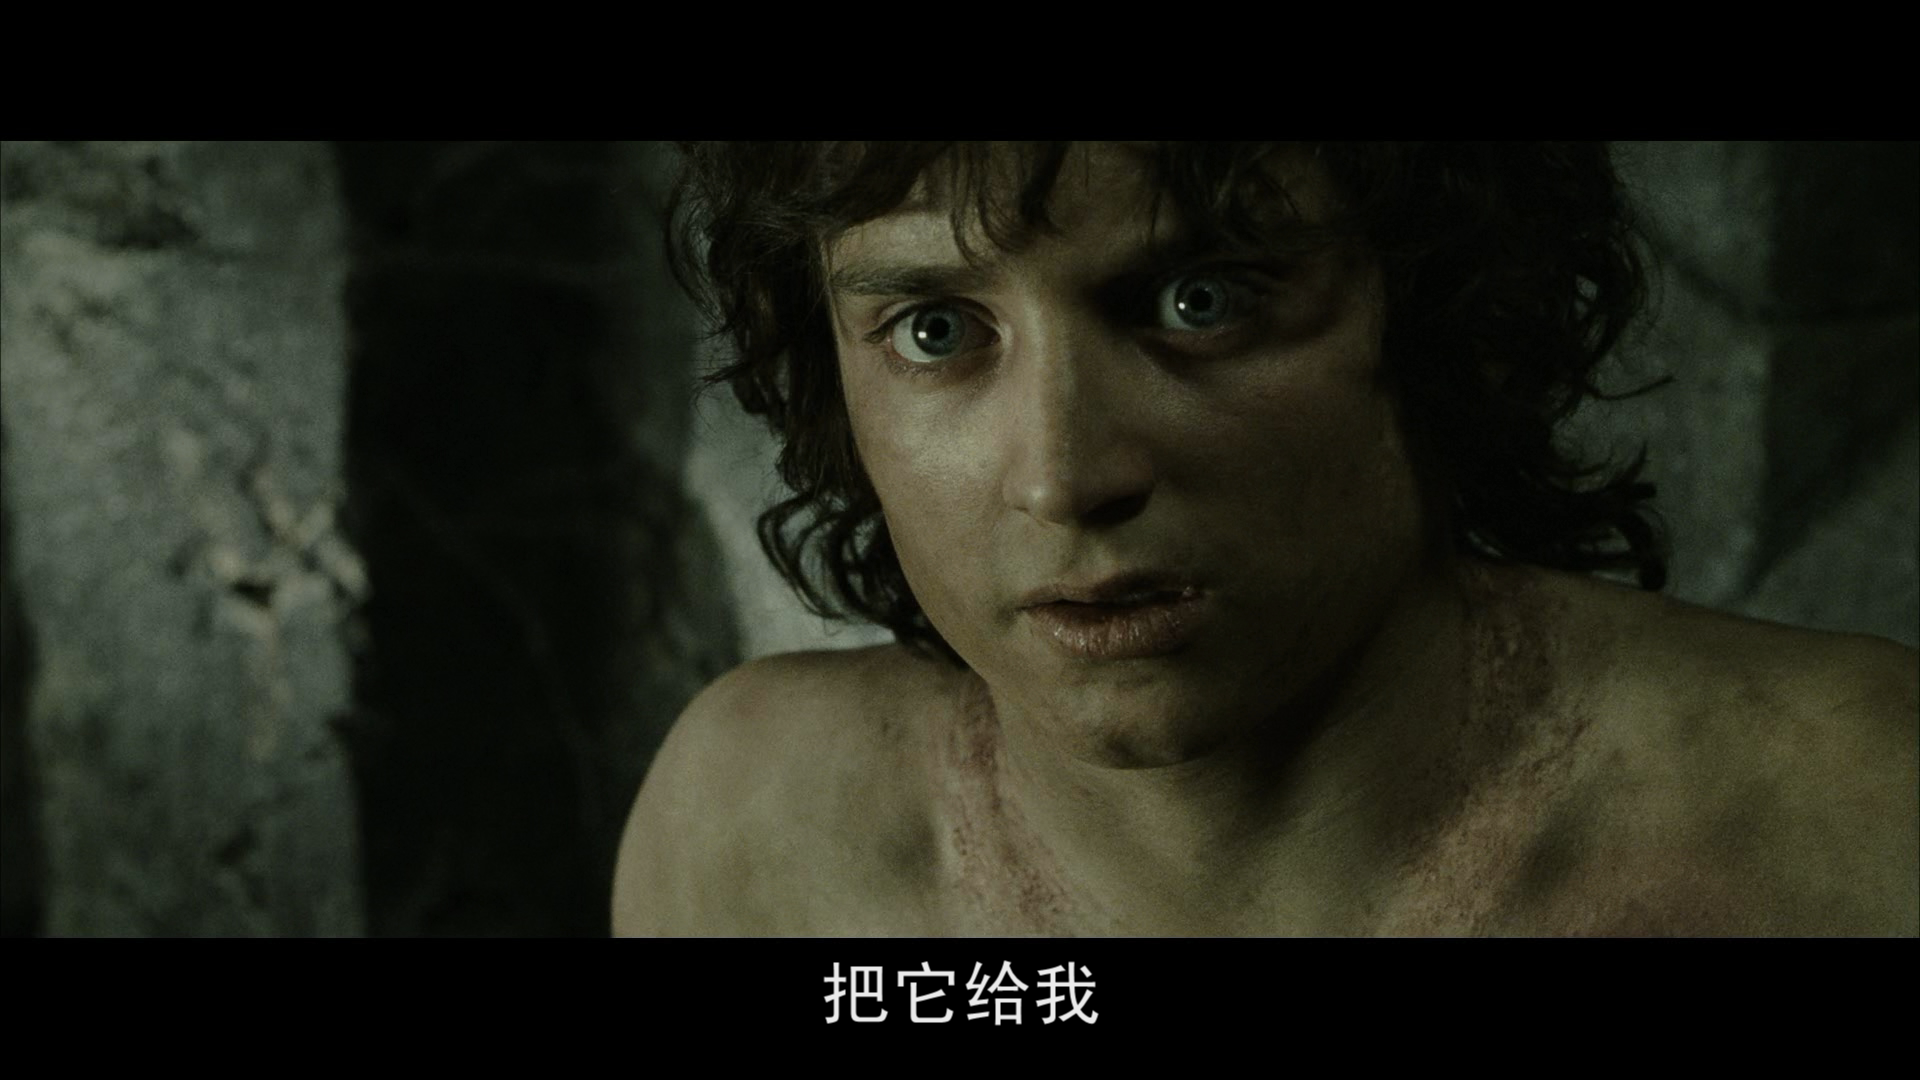 [霍比特人1].The.Hobbit.An.Unexpected.Journey.2012.EXTENDED.BluRay.1080p.AVC.DTS-HD.MA.7.1-Tay    39.17G+ ]9 o/ X5 e- o( Q; p& i2 p7 D" C-13.png